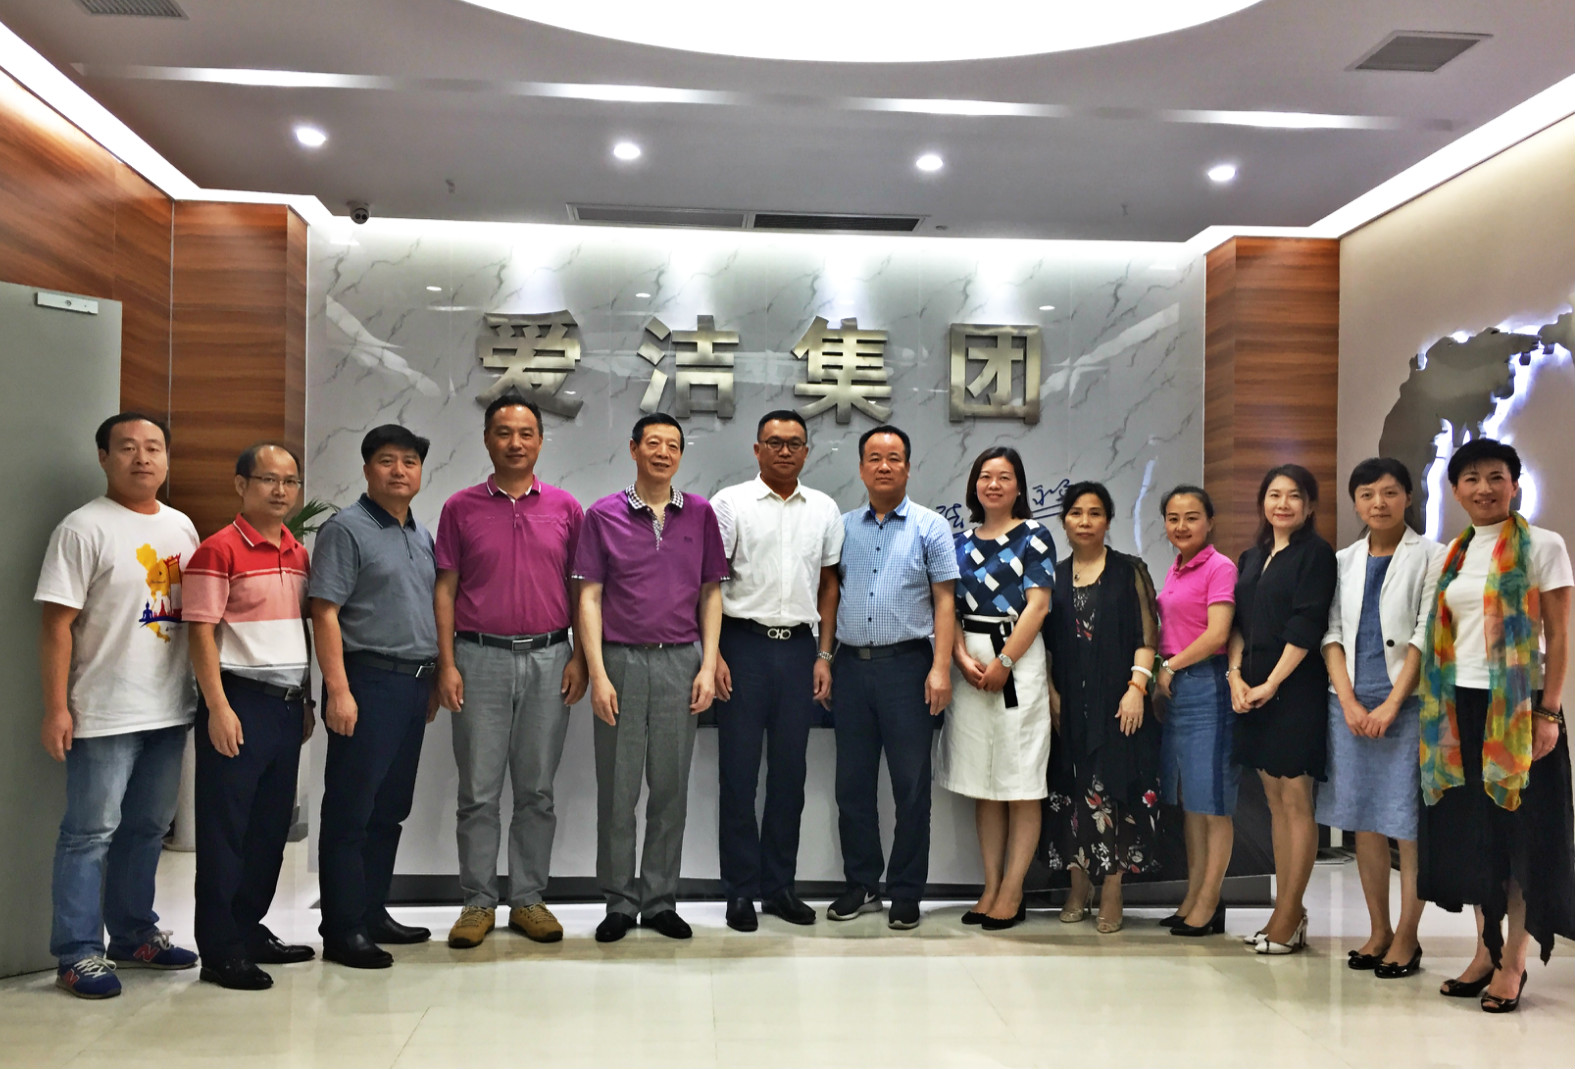 省、市总工会领导赴武汉市清洁行业及企业调研指导工作